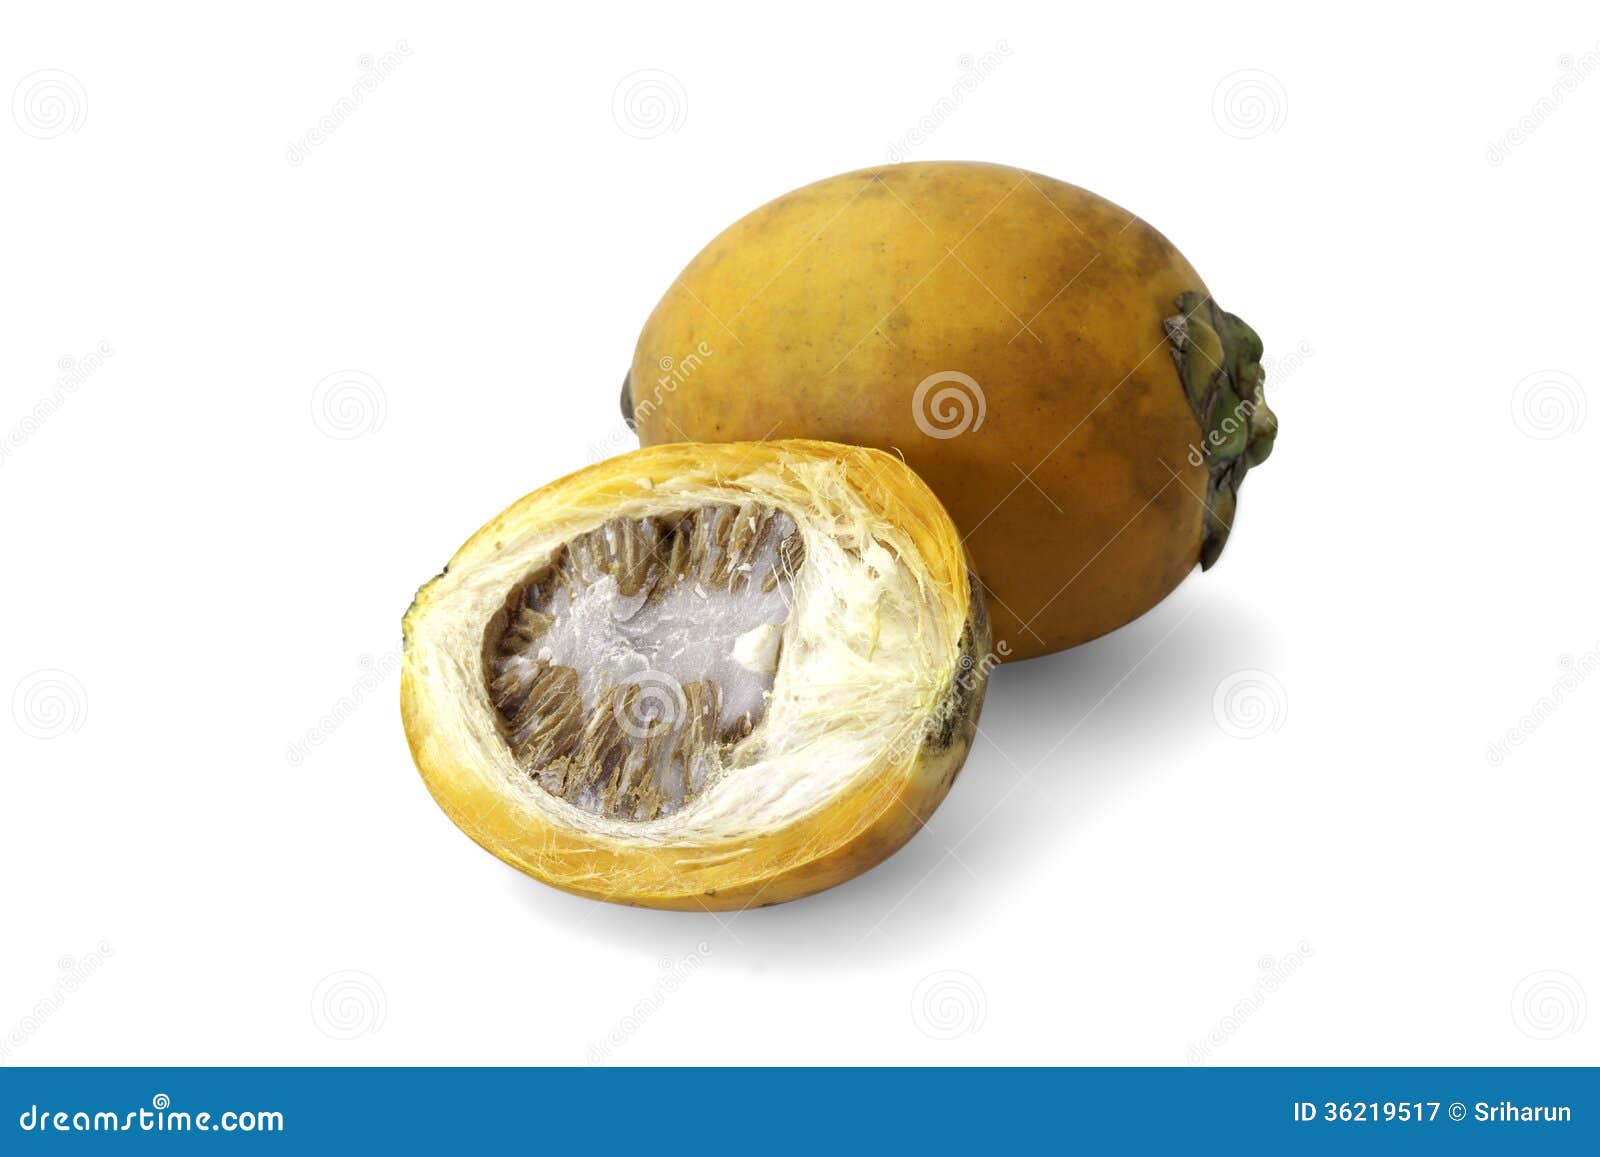 ripe acera or betel palm nut fruit